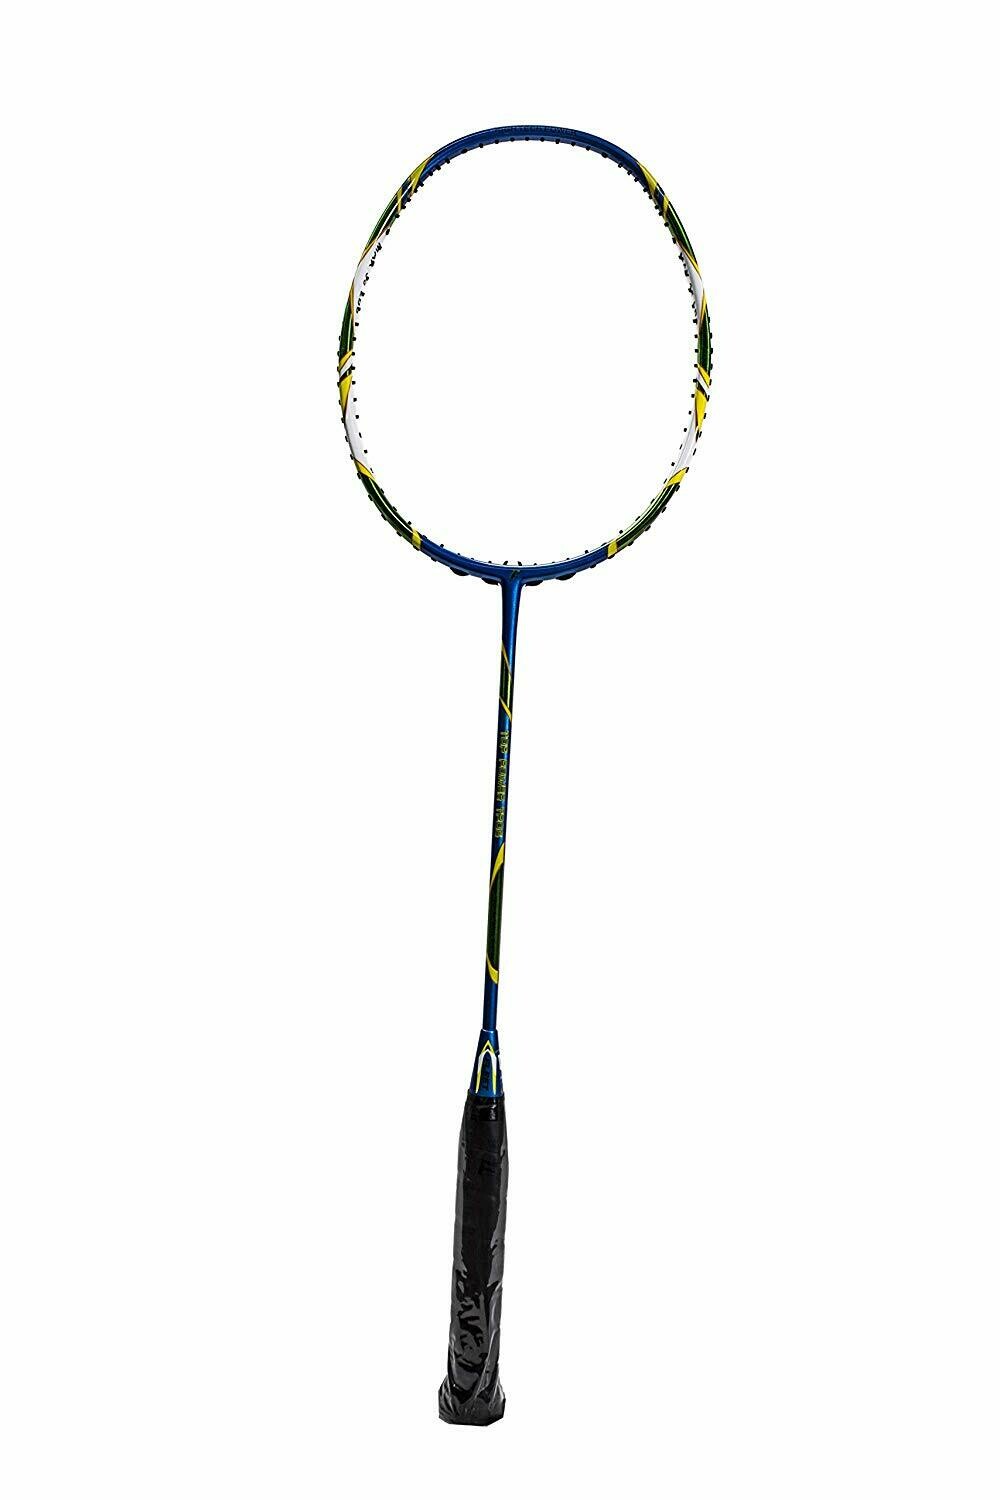 Fleet Top Power TP06 Blue Badminton Racquet